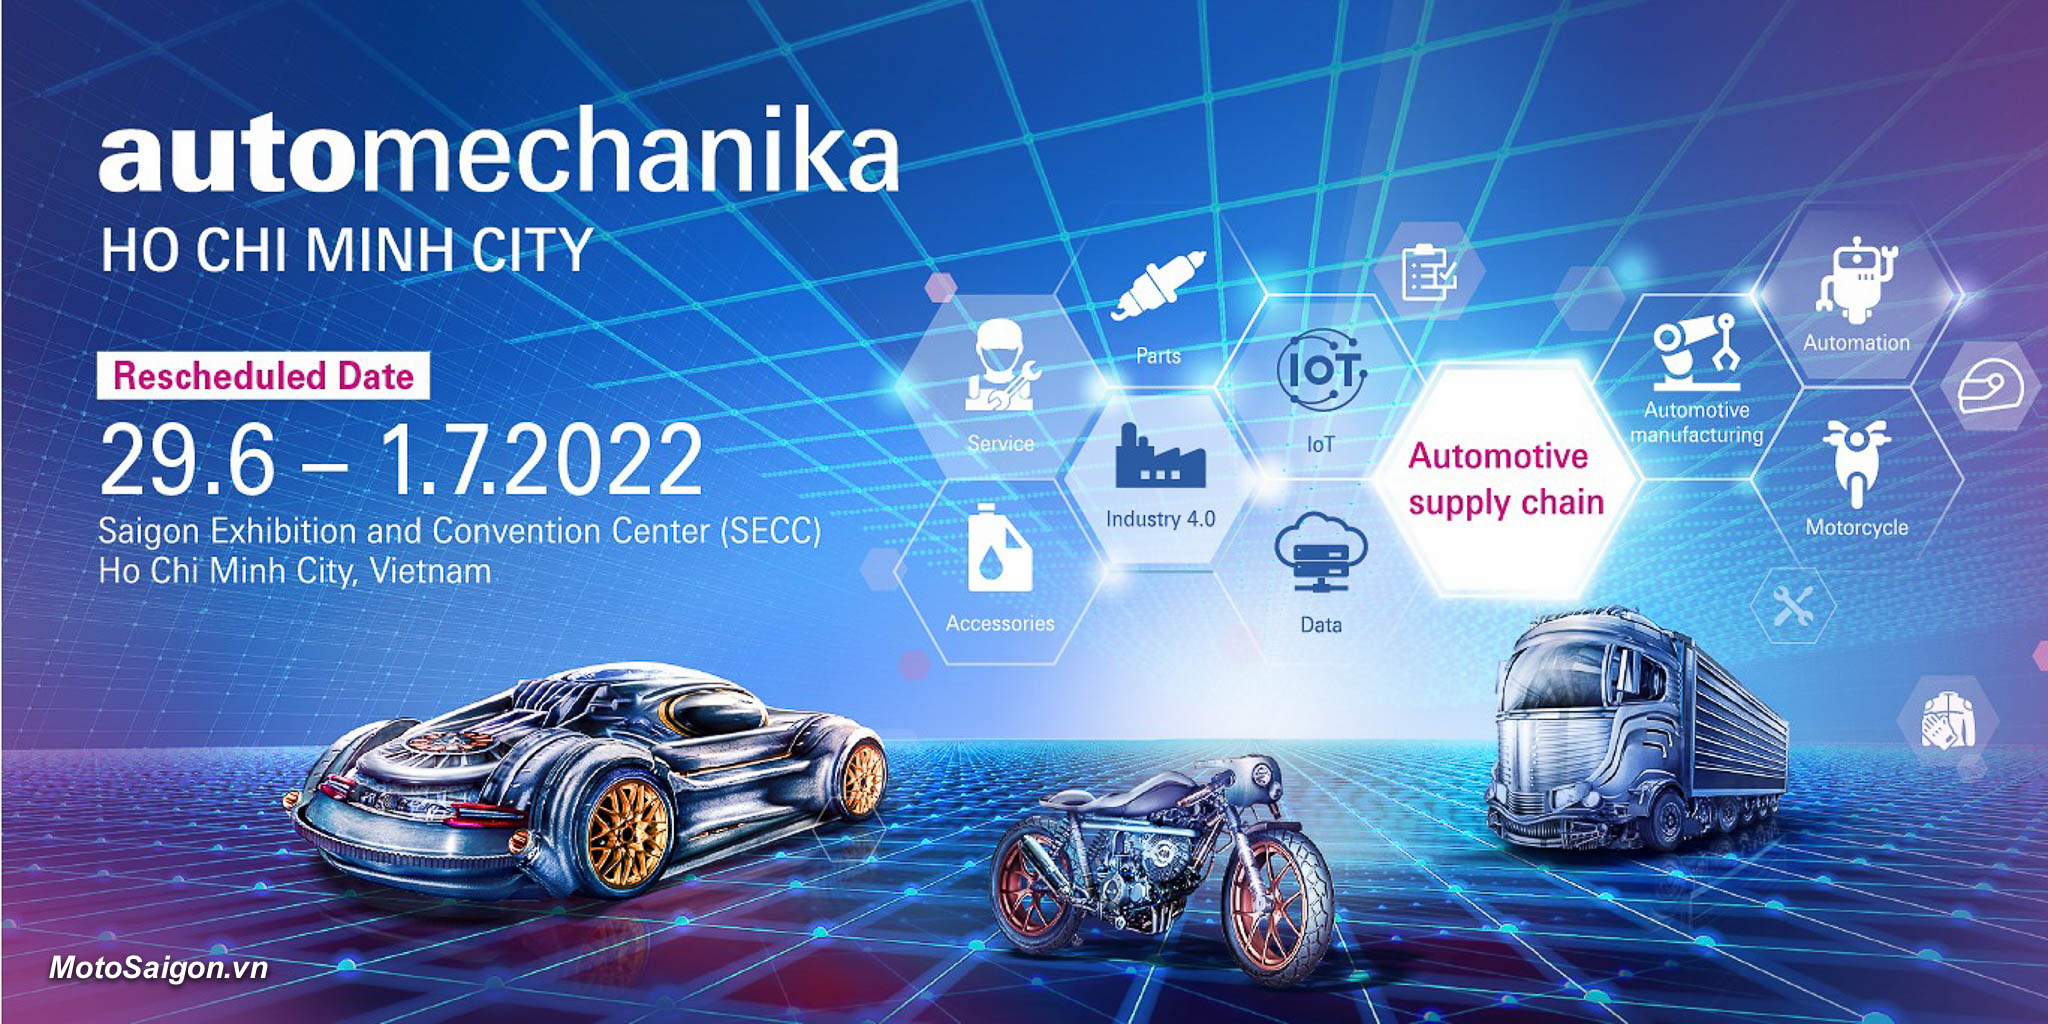 Triển lãm công nghiệp ô tô - Automechanika Hochiminh 2022 đã trở lại